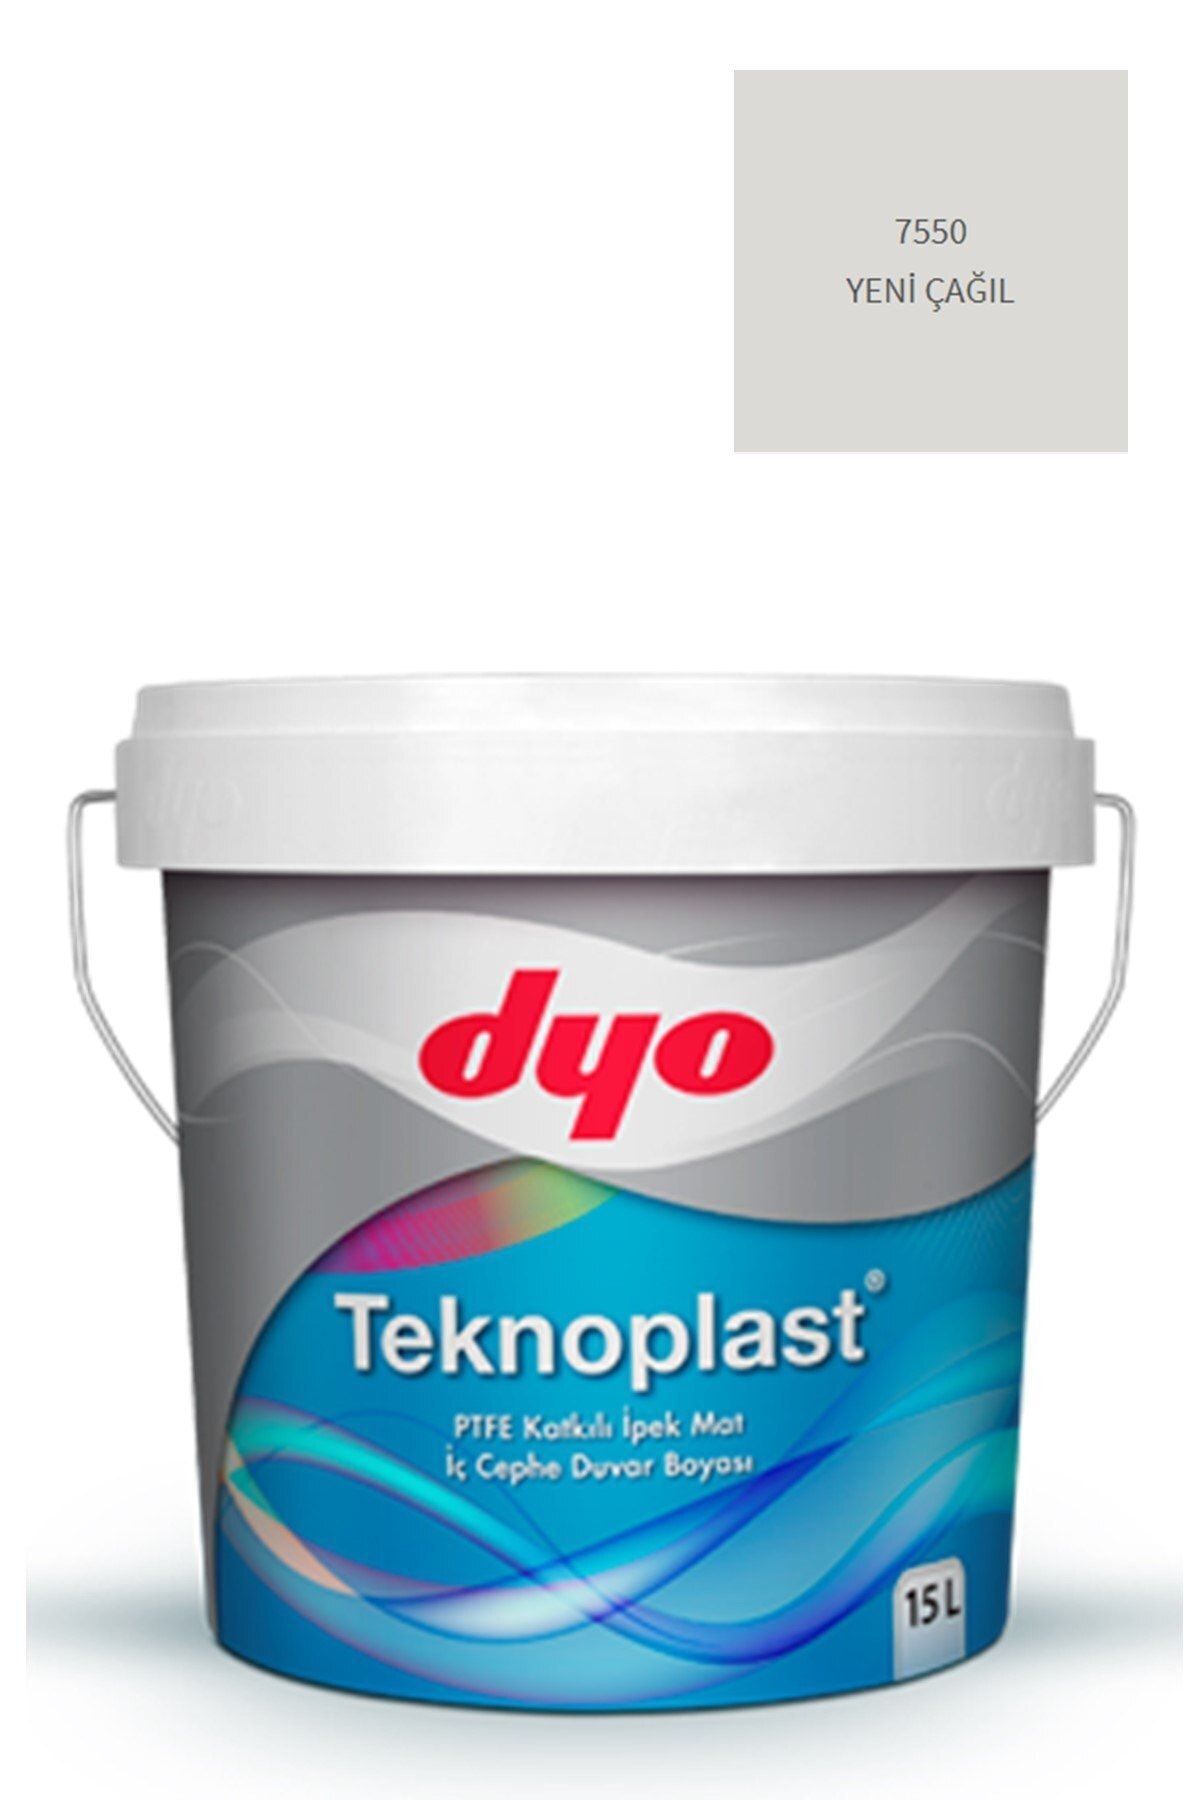 Dyo Teknoplast Teflonlu Antibakteriyel Ipek Mat Iç Cephe Duvar Boyası 7550 Yeni Çağıl 15 Lt